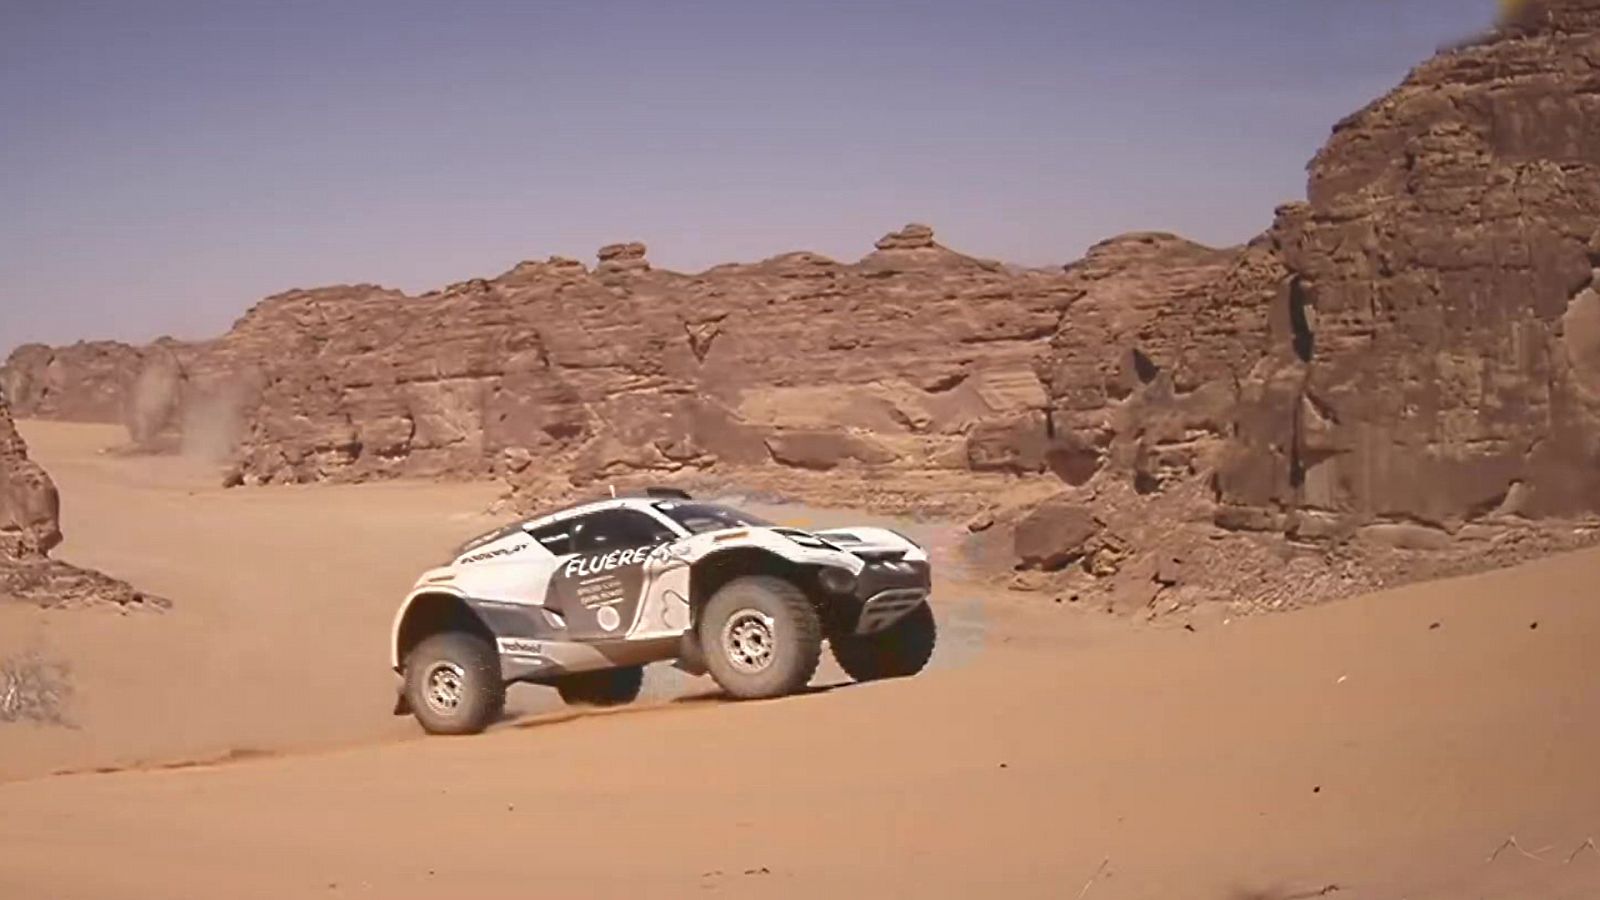 Automovilismo - Extreme E "Desert X-Prix". Clasificación 3 y 4